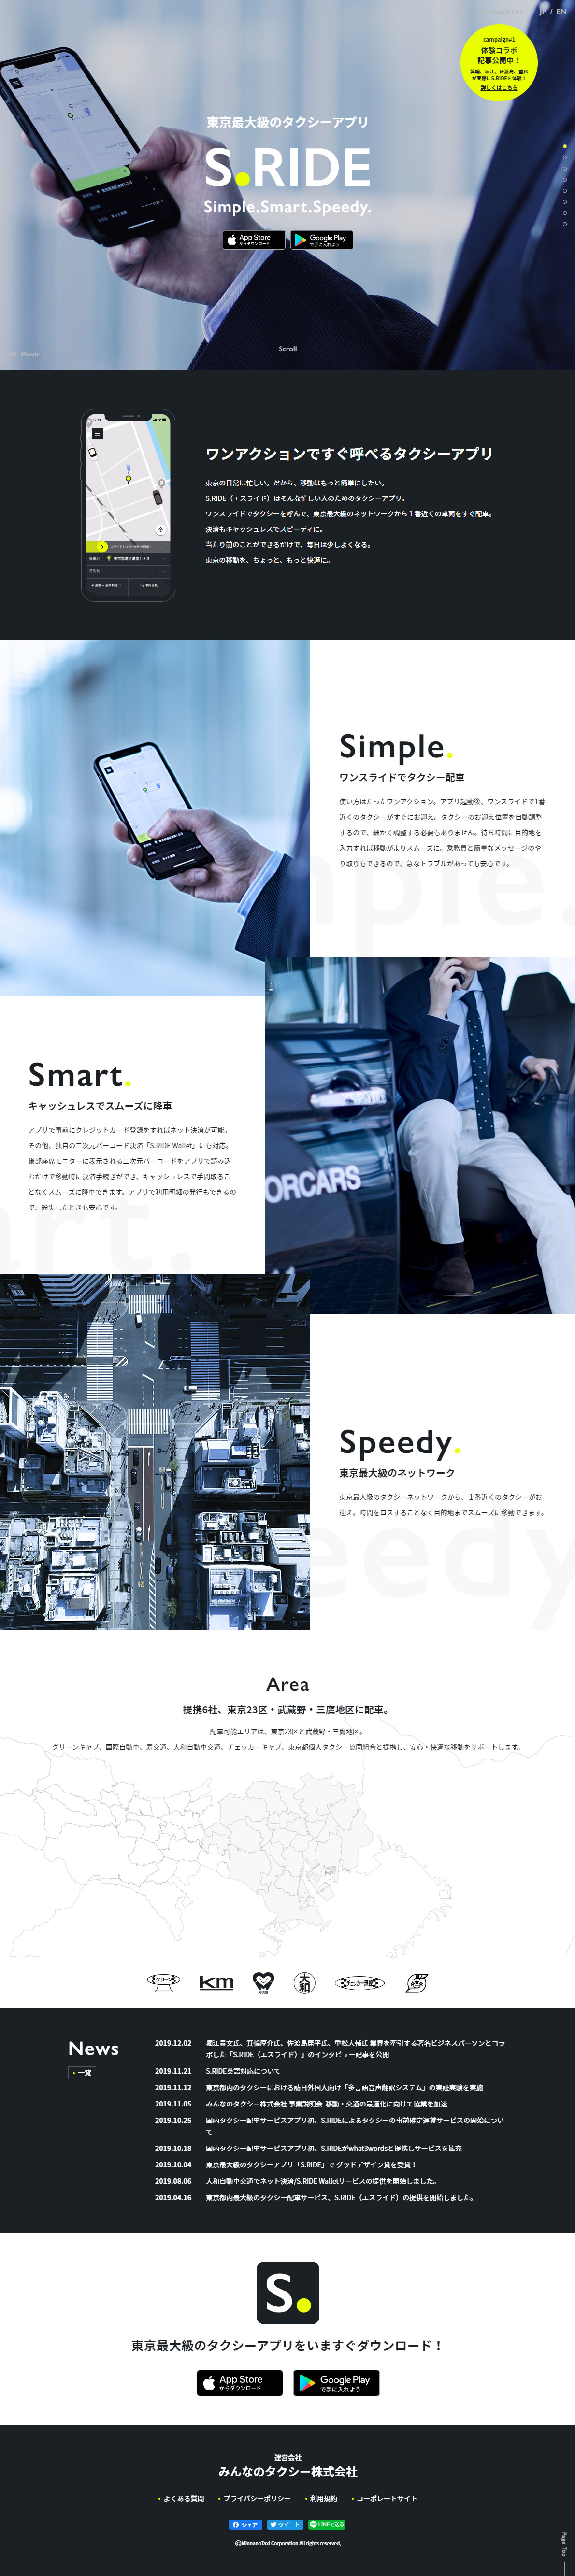 S.RIDE 東京最大級のタクシーアプリ